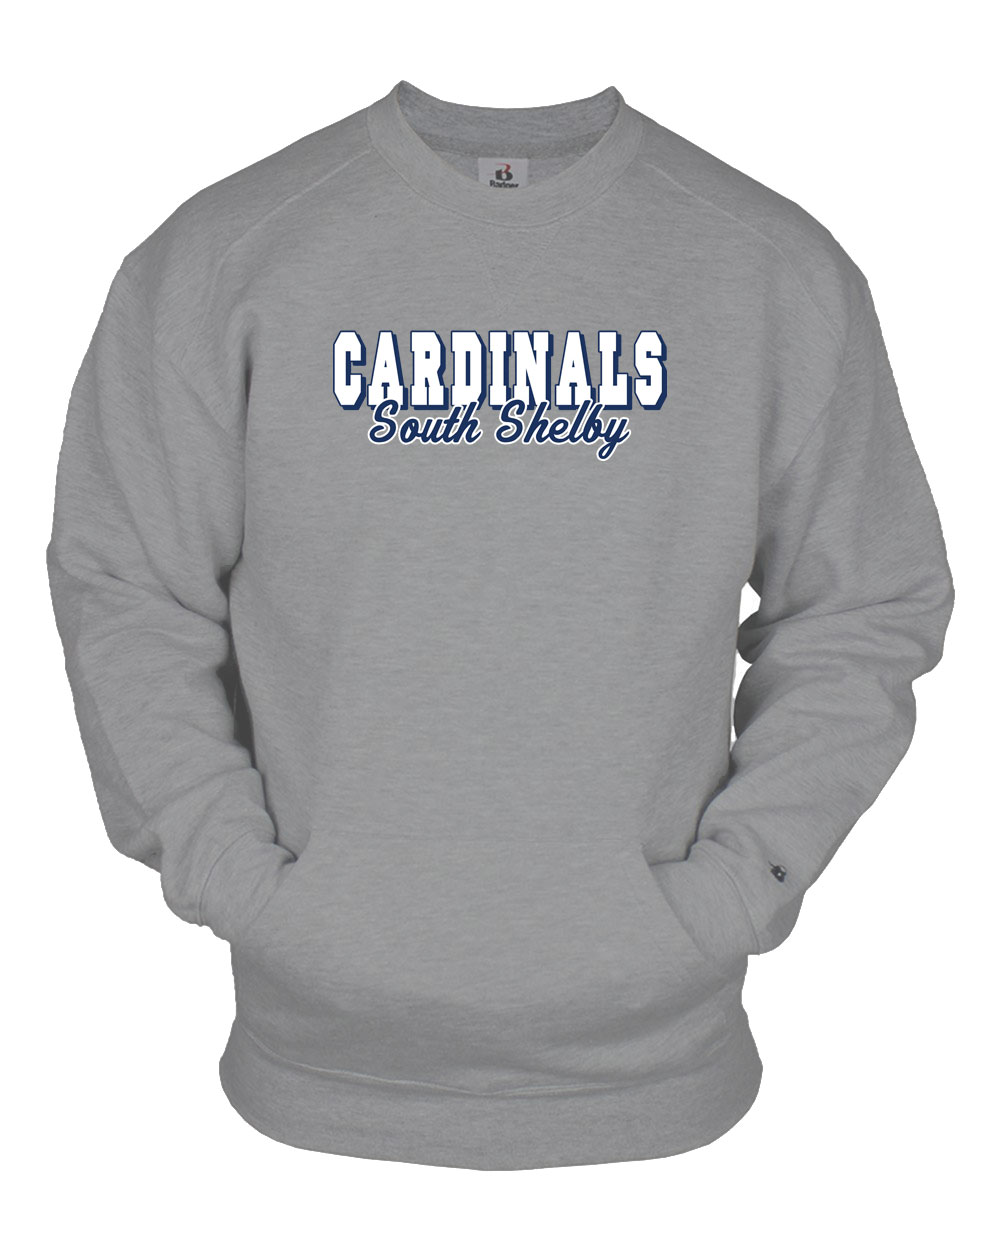 South Shelby Cardinals Pocket Crewneck | Salt River Shirt Company